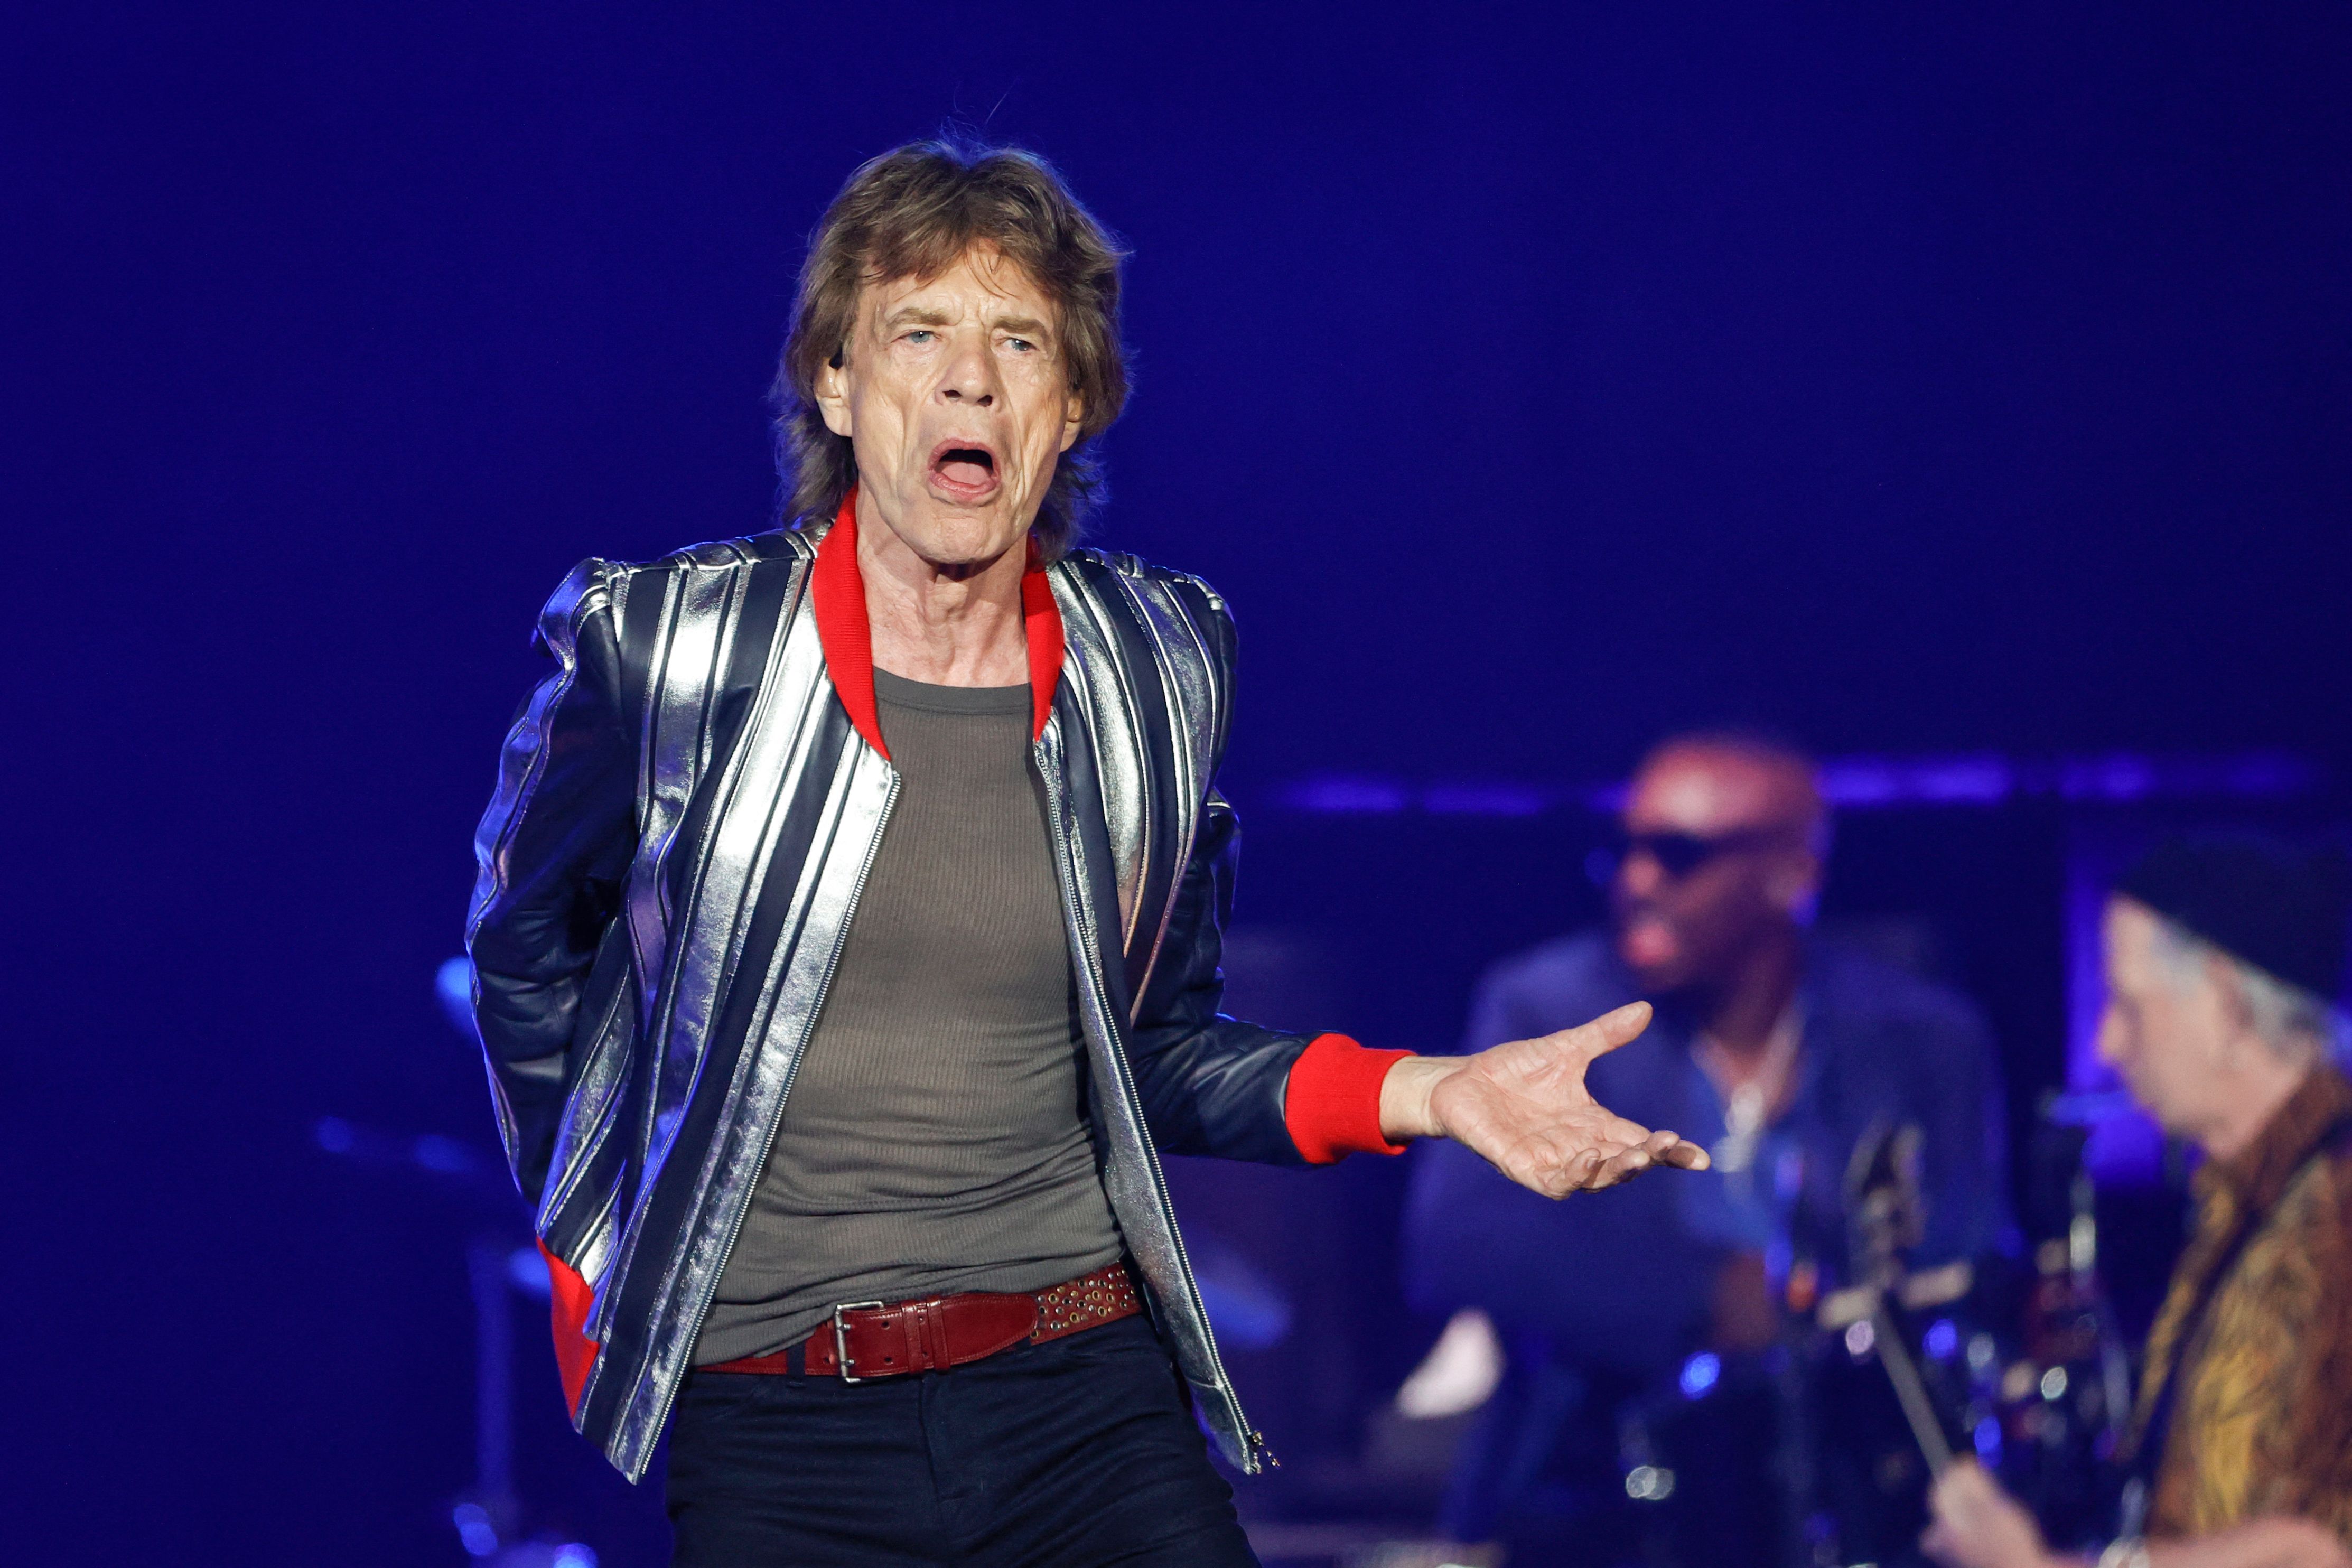 Mick Jagger durante la gira norteamericana de Los Rolling Stones "No Filter" 2021. (Foto Prensa Libre: AFP)